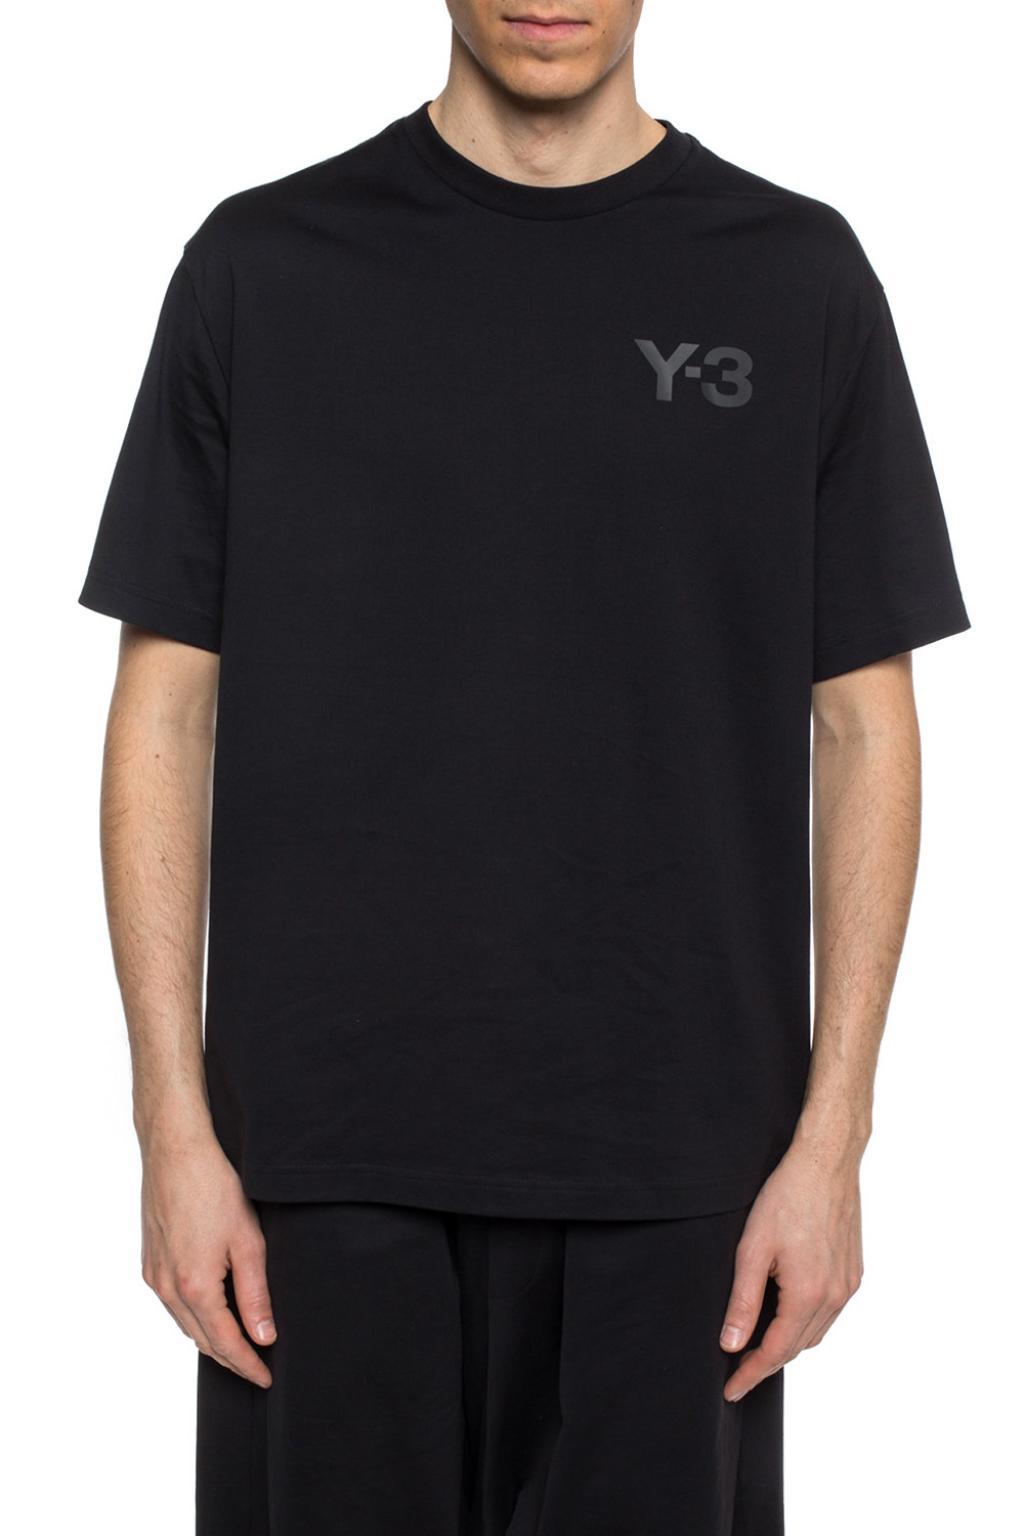 Y-3 Cotton Classic Logo T-shirt Black for Men - Lyst